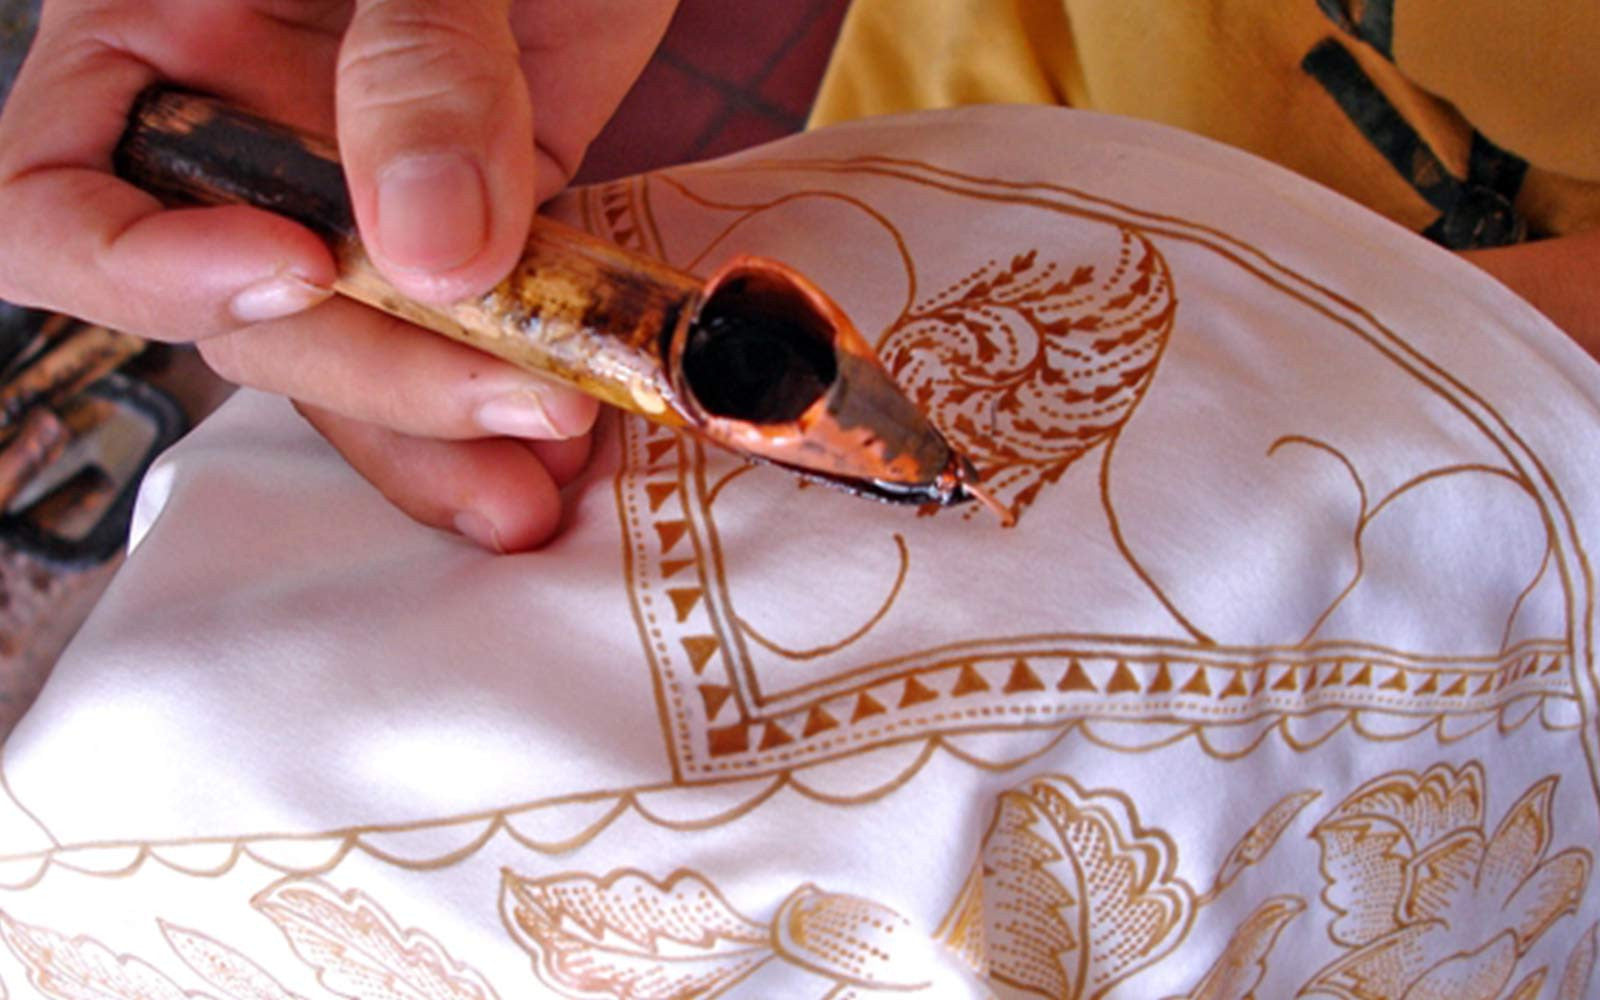  Batik  The Magnificent Art of Wax Printing  Fabriclore com